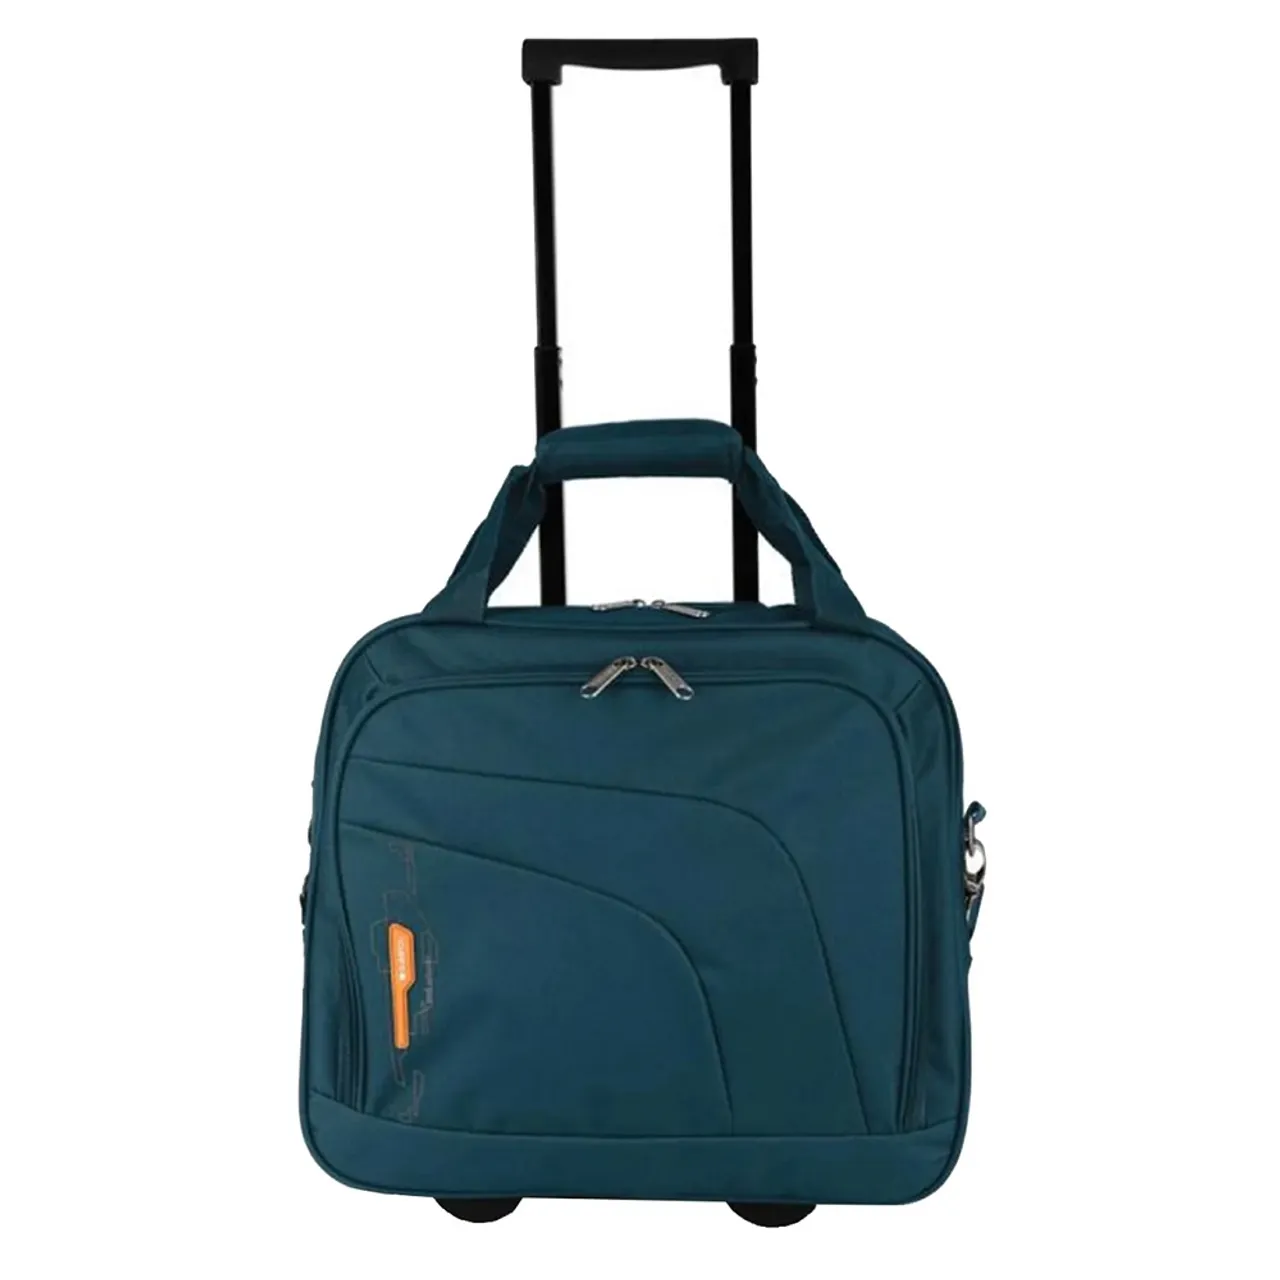 Gabol Week Eco Pilot Case Laptop Trolley 15.6" Turquoise